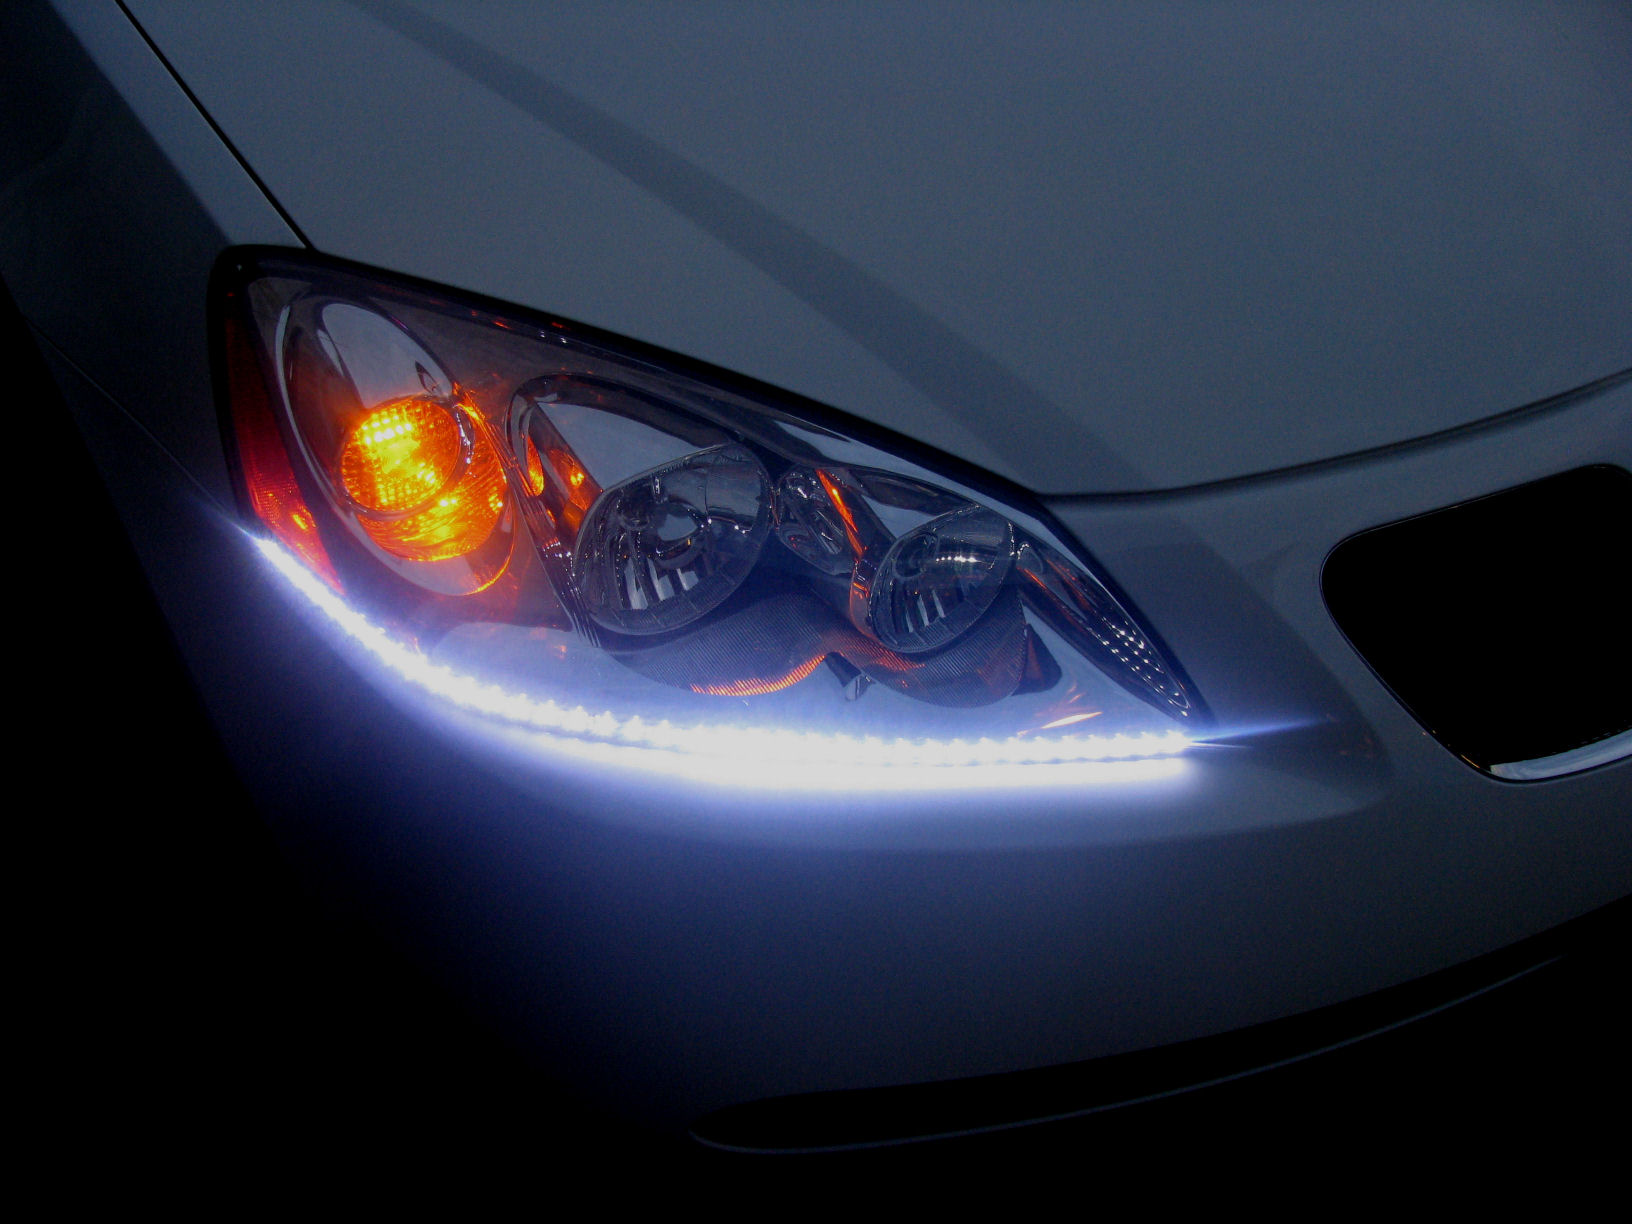 Headlight Fog Driving Light Lamp Kit Set of 4 for 05-09 Pontiac G6 GT New